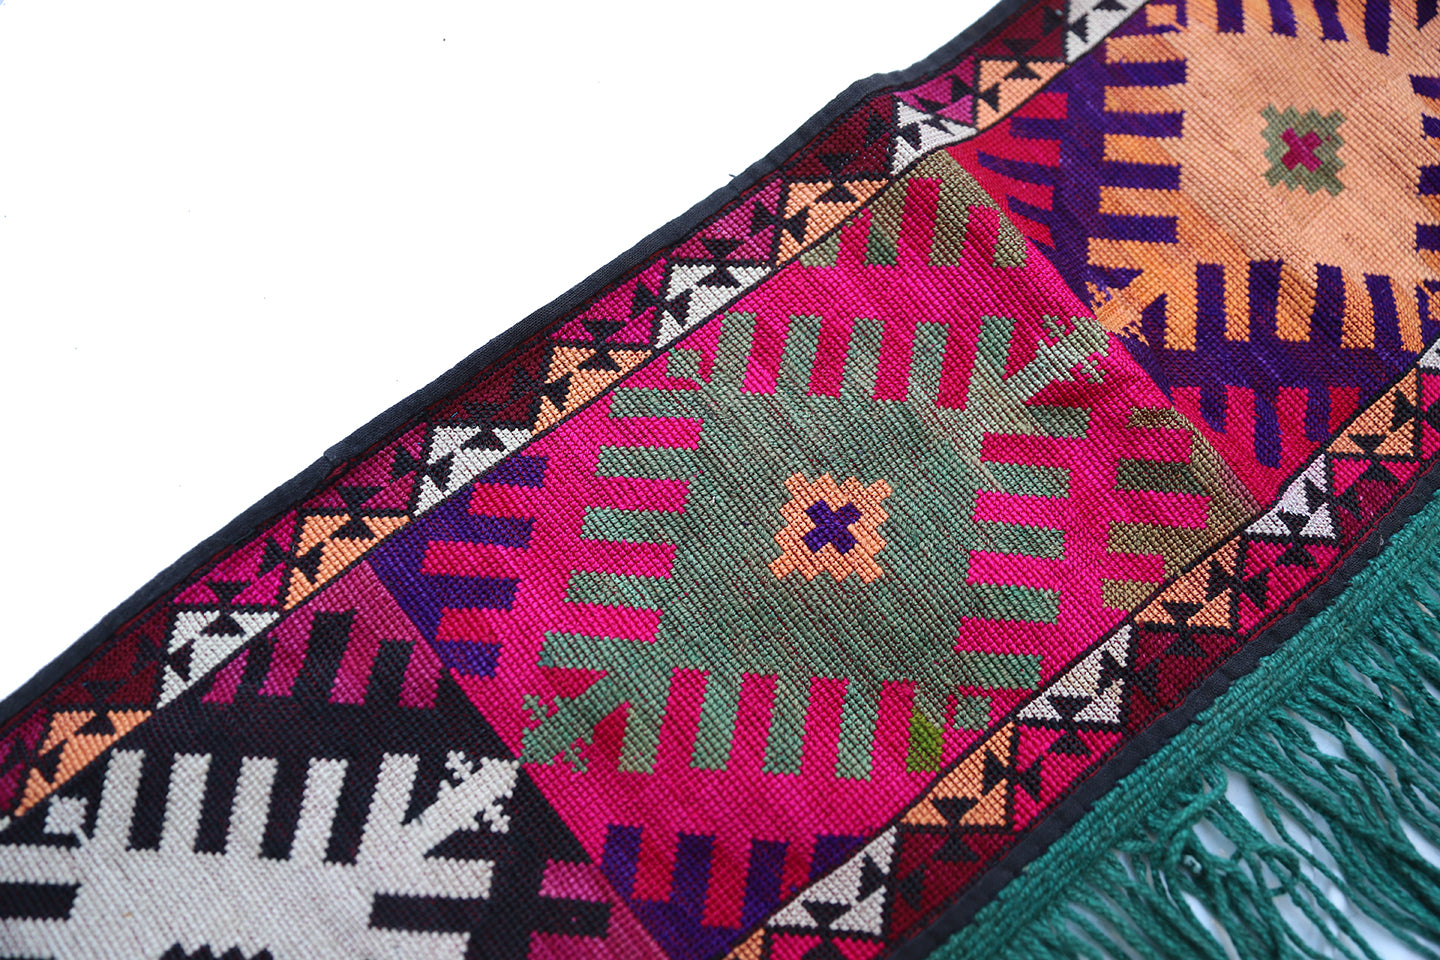 2'x4' Uzbek Yurt Decorative Embroidery